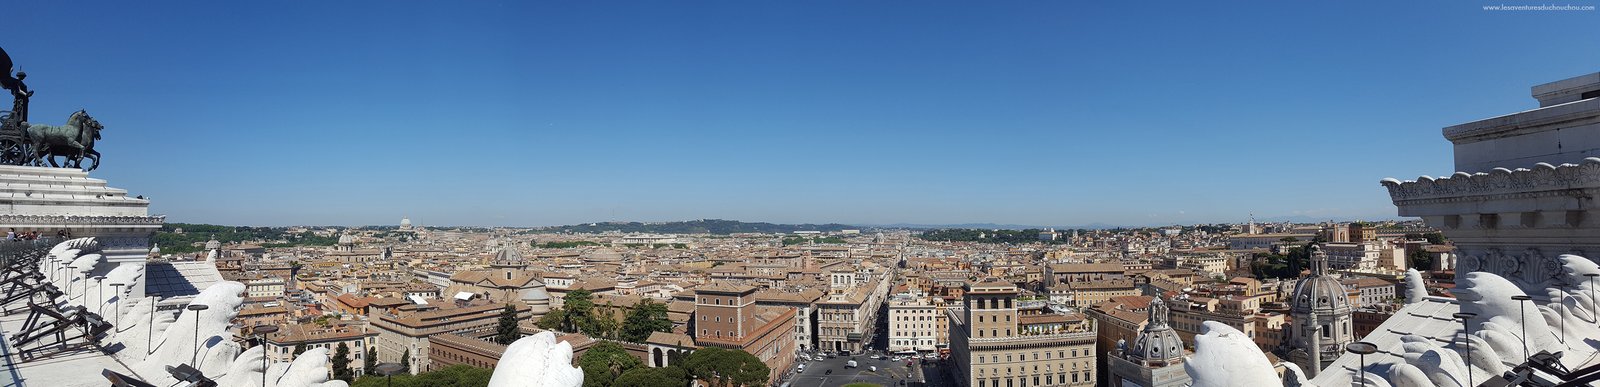 Vittoriano Panorama